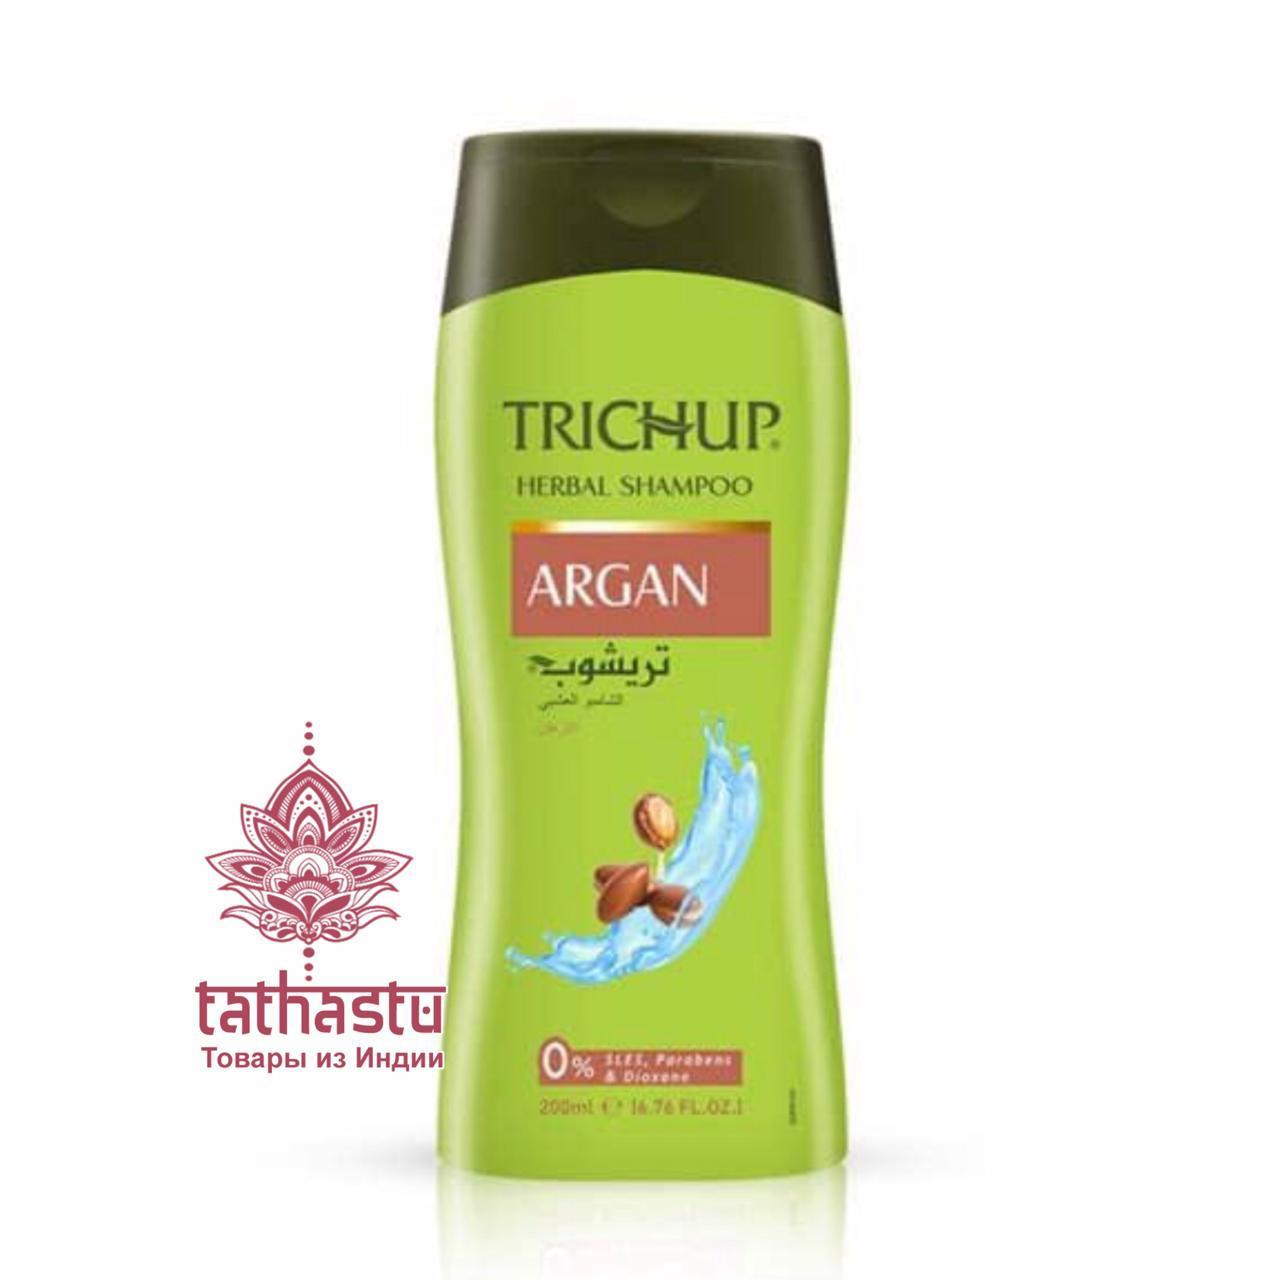 Trichup Shampoo ARGAN, Vasu (Тричуп Шампунь С МАСЛОМ АРГАНЫ, Васу). Tathastu товары и индии